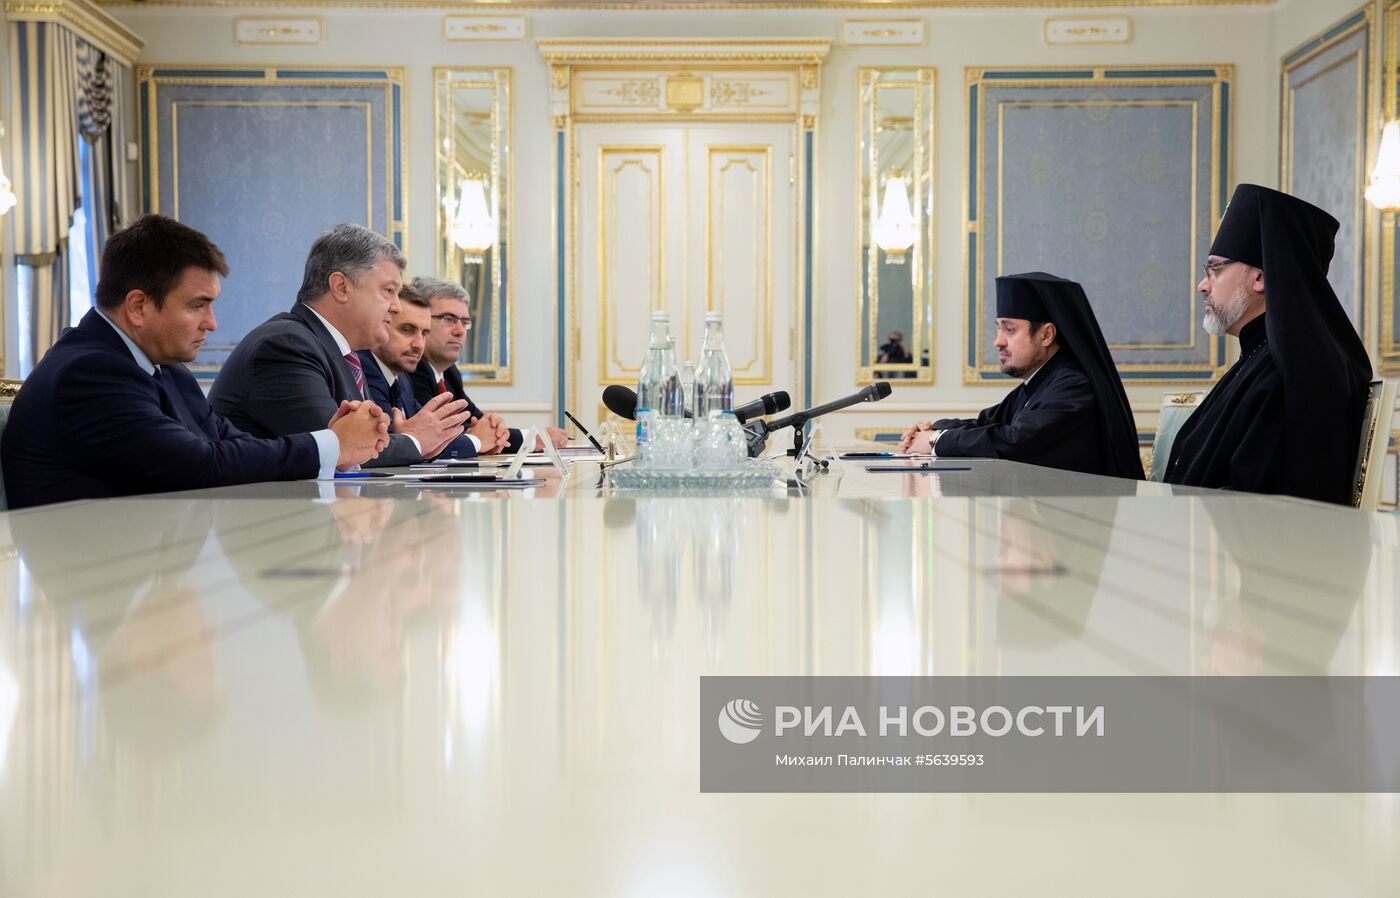 Президент Украины П. Порошенко встретился с экзархами Вселенского патриархата на Украине